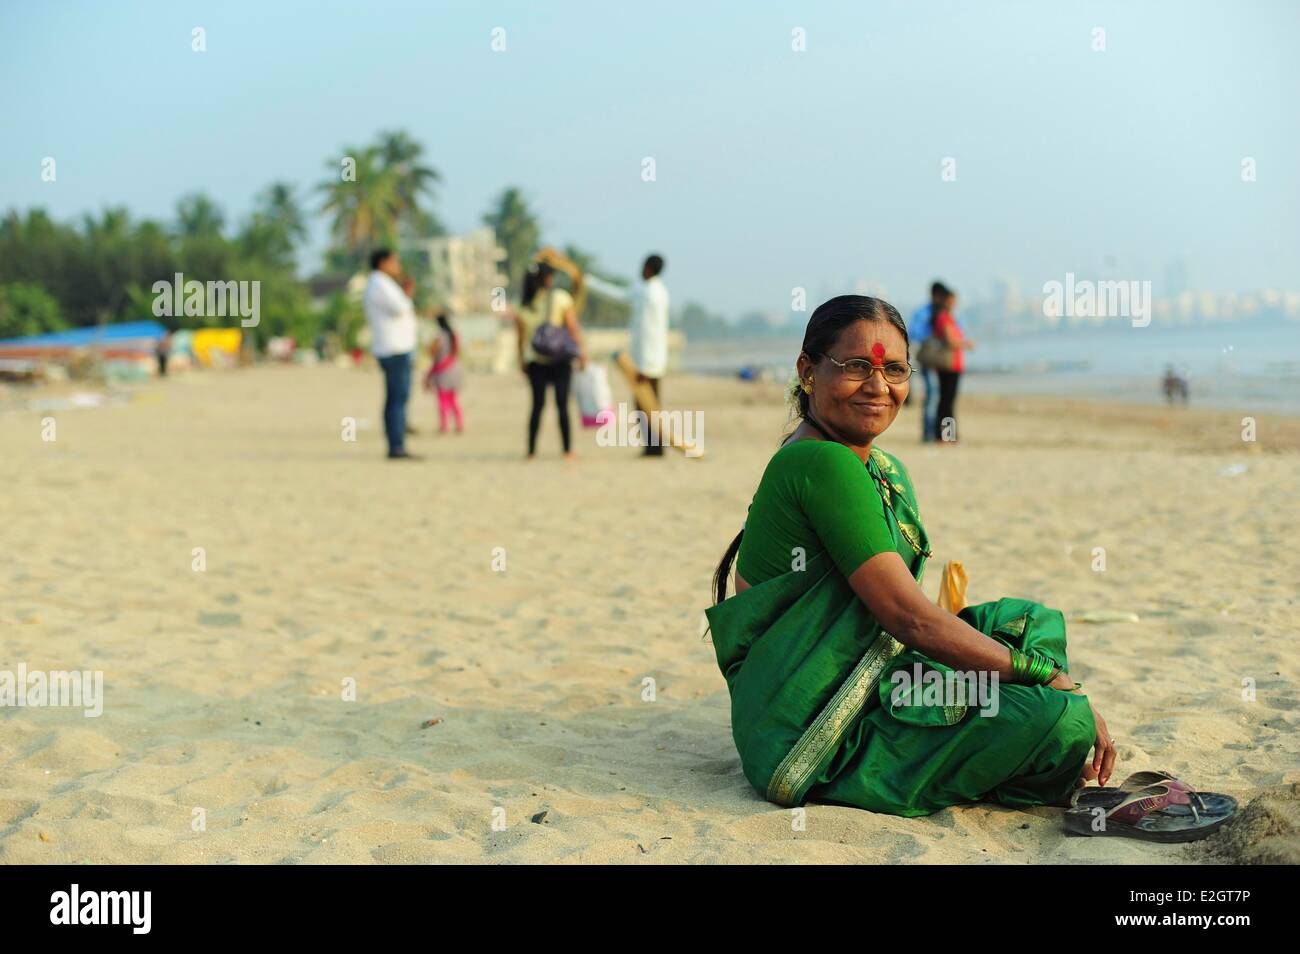 L'état de Maharashtra en Inde Mumbai Chowpatty beach portrait de femme indienne en sari vert Banque D'Images